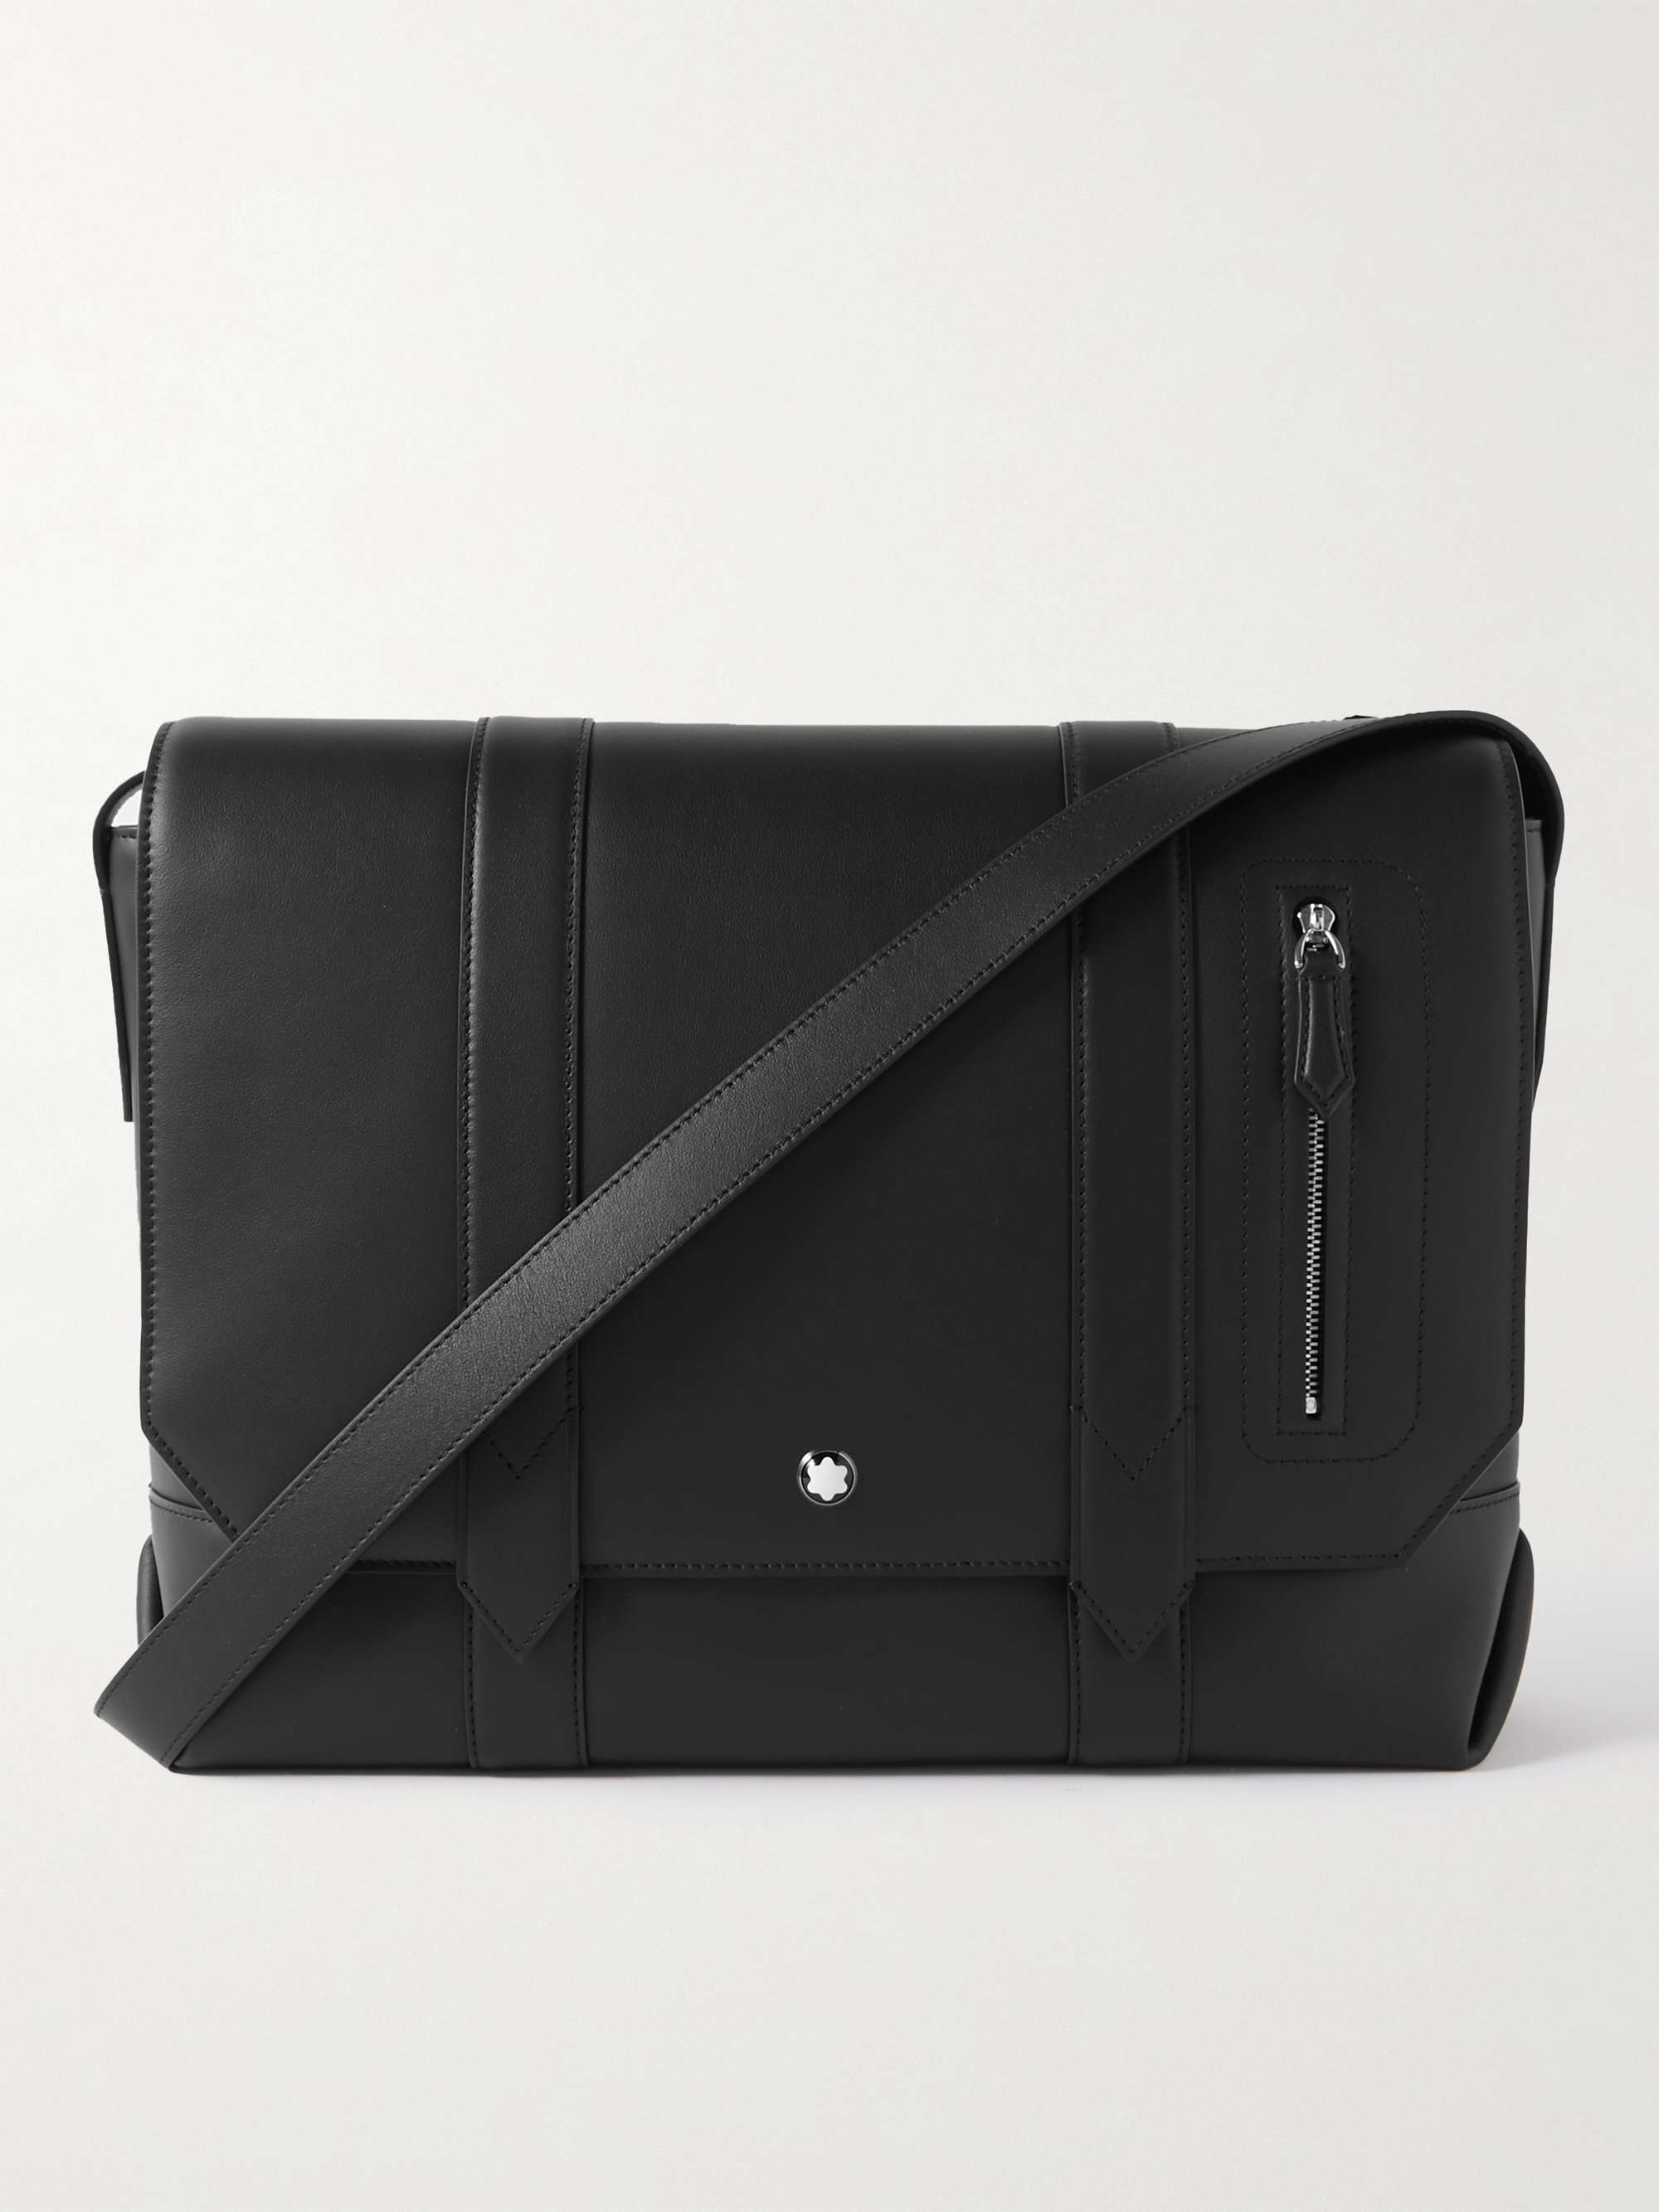 MONTBLANC Meisterstück Leather Messenger Bag for Men | MR PORTER